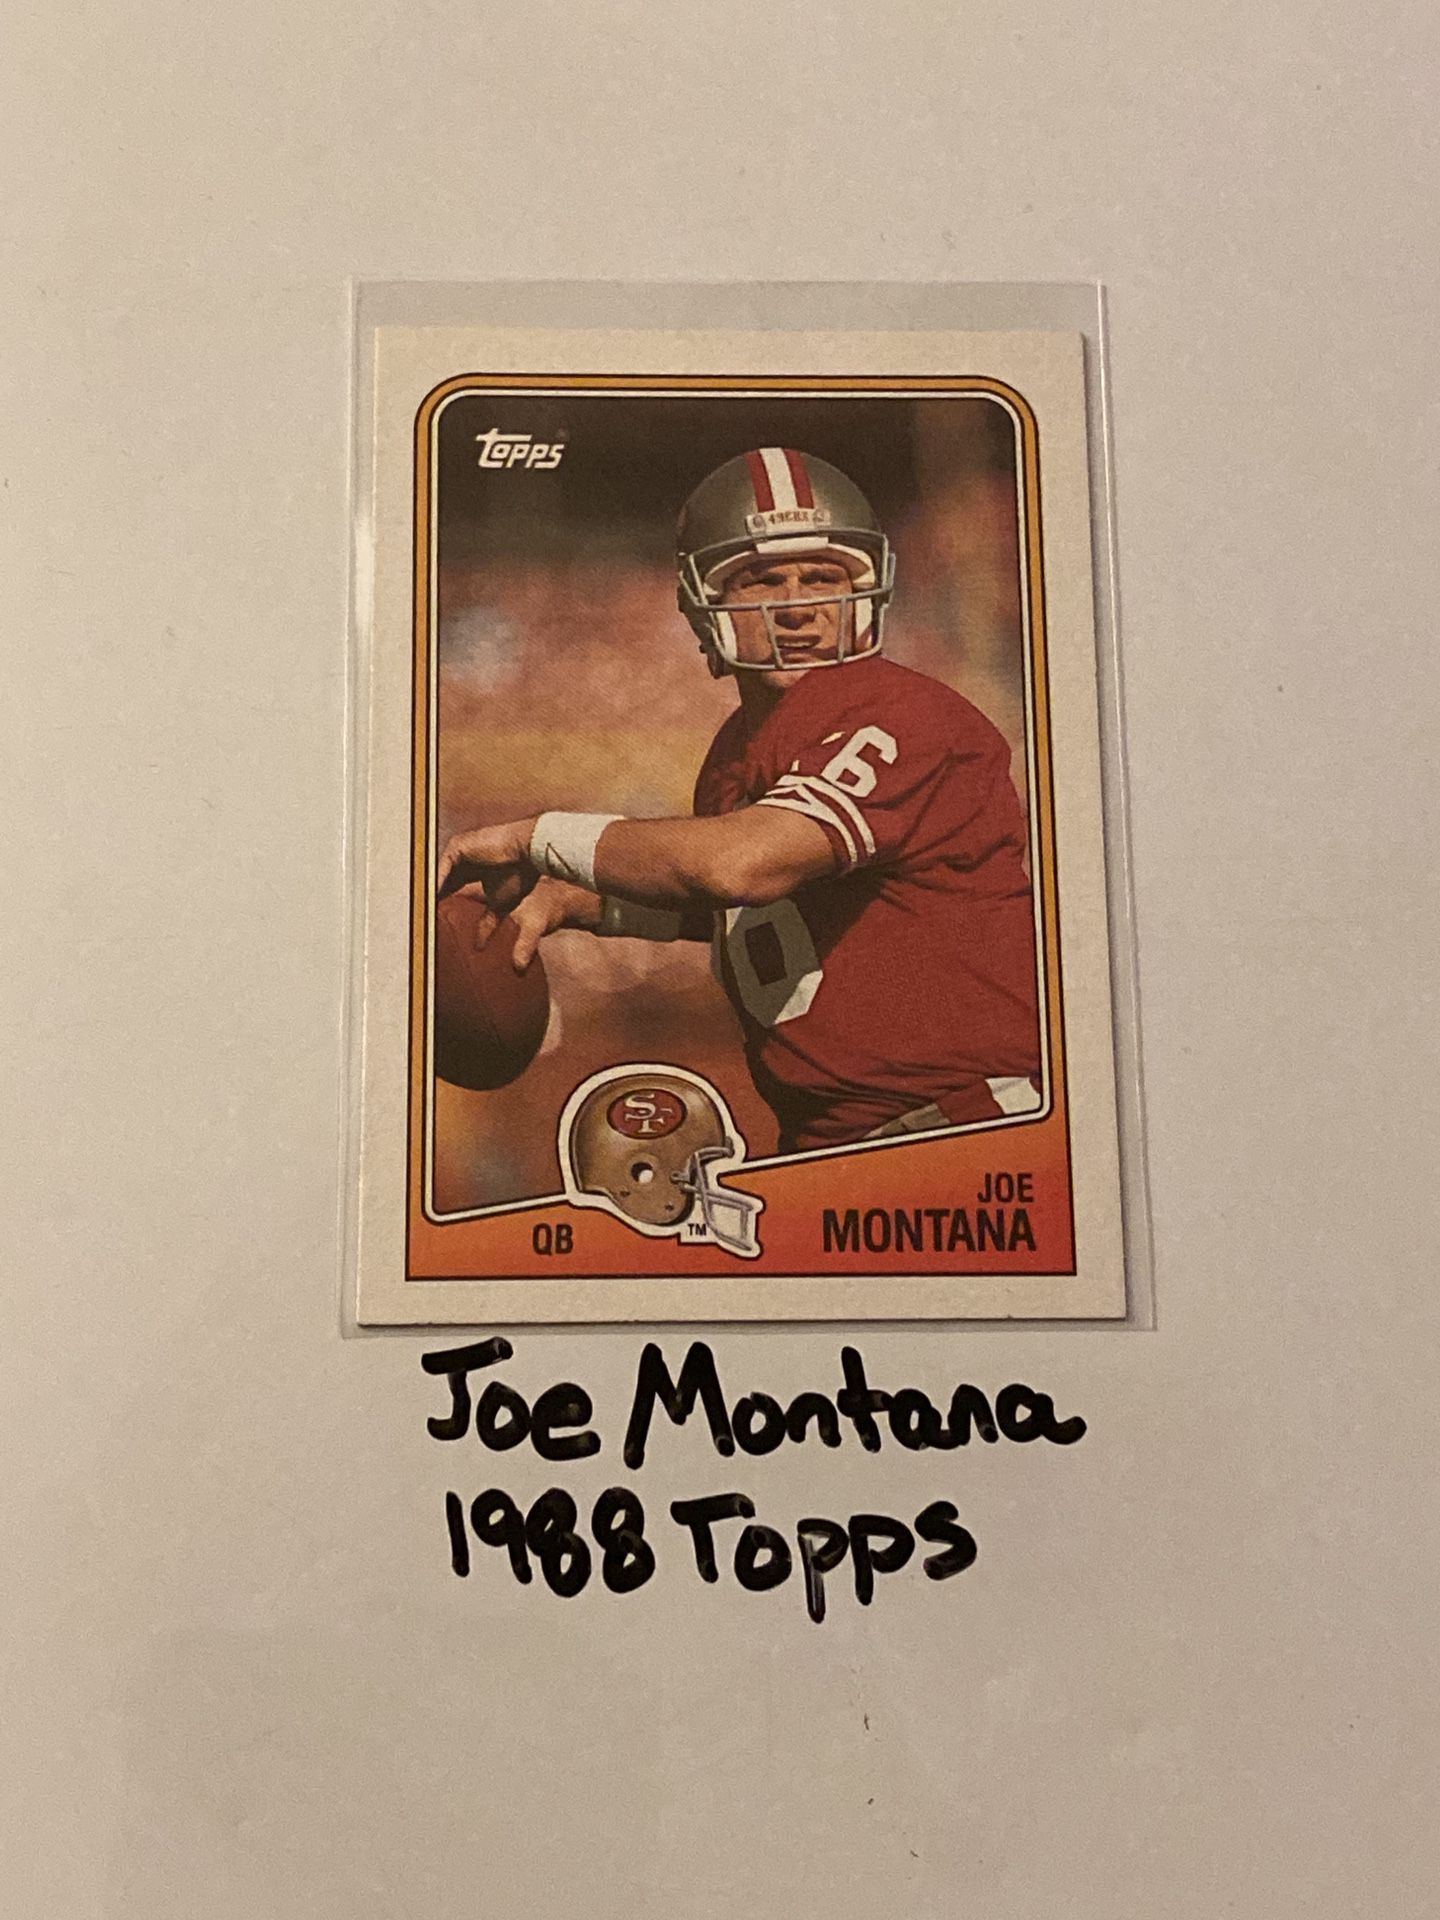 Joe Montana San Francisco 49ers Hall of Fame QB 1988 Topps Card. 